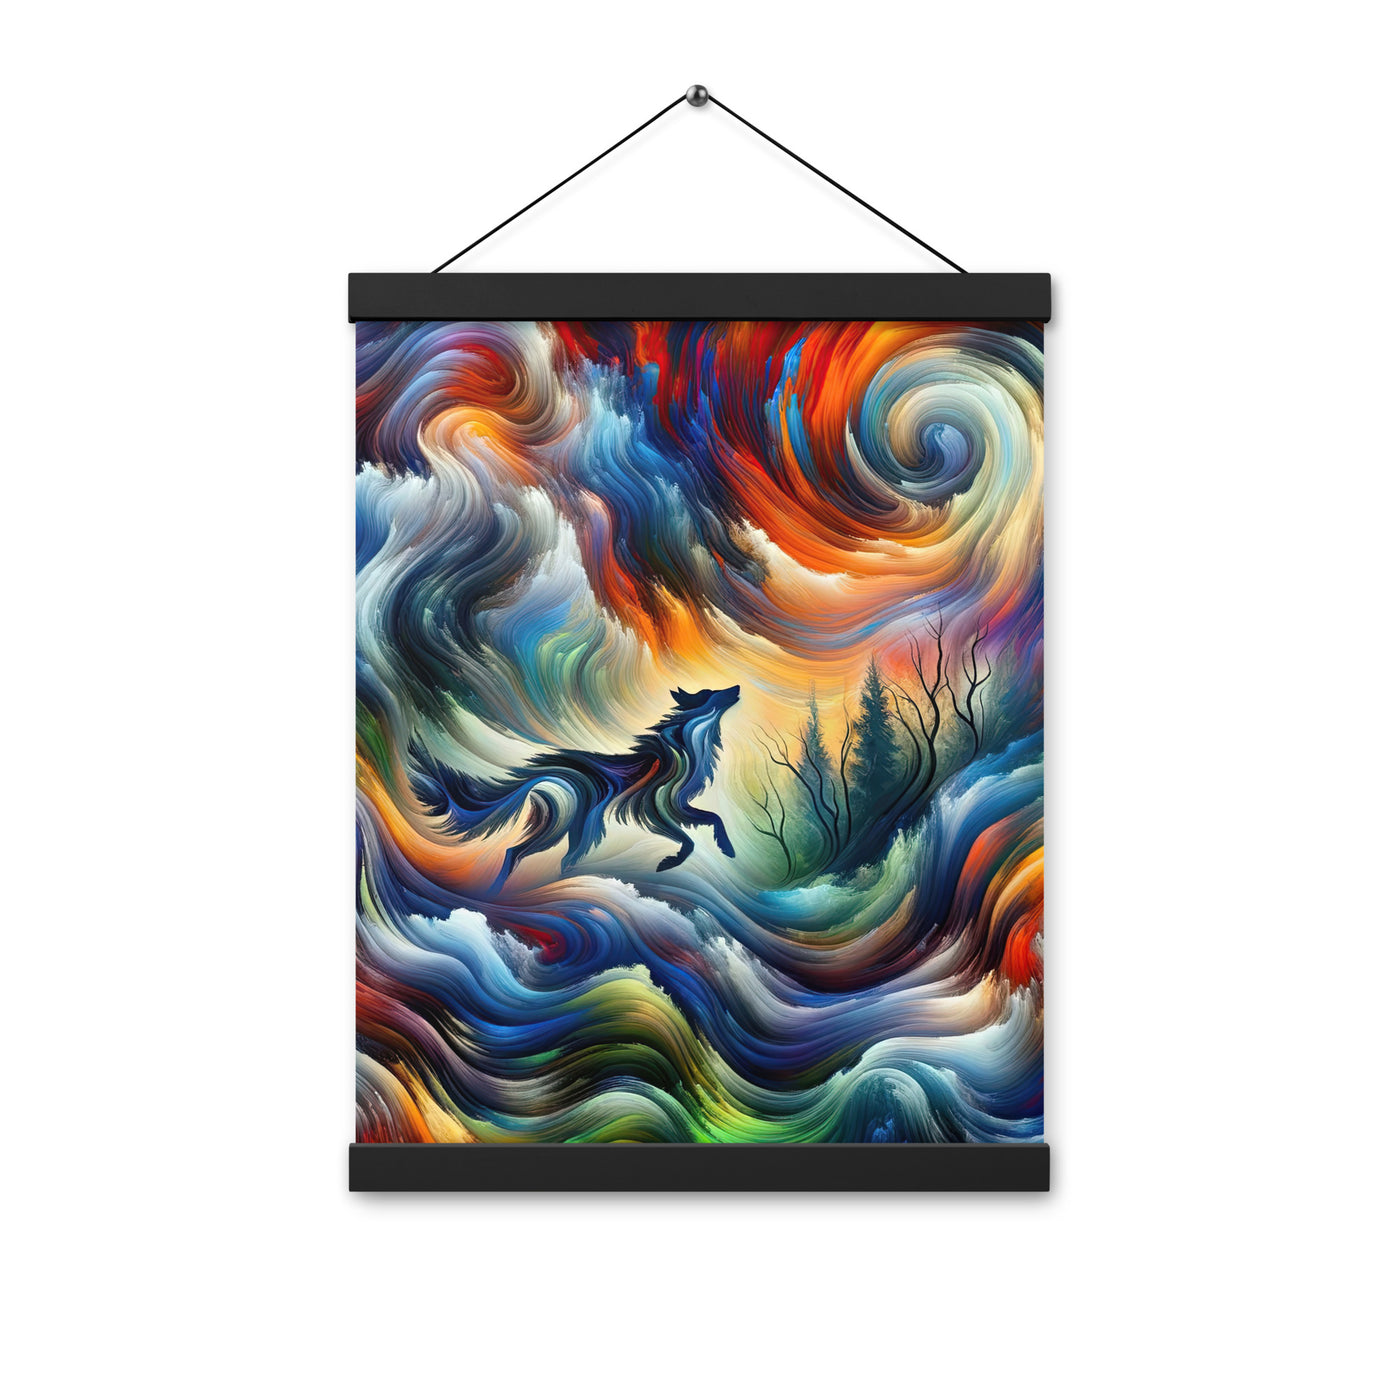 Alpen Abstraktgemälde mit Wolf Silhouette in lebhaften Farben (AN) - Premium Poster mit Aufhängung xxx yyy zzz 30.5 x 40.6 cm